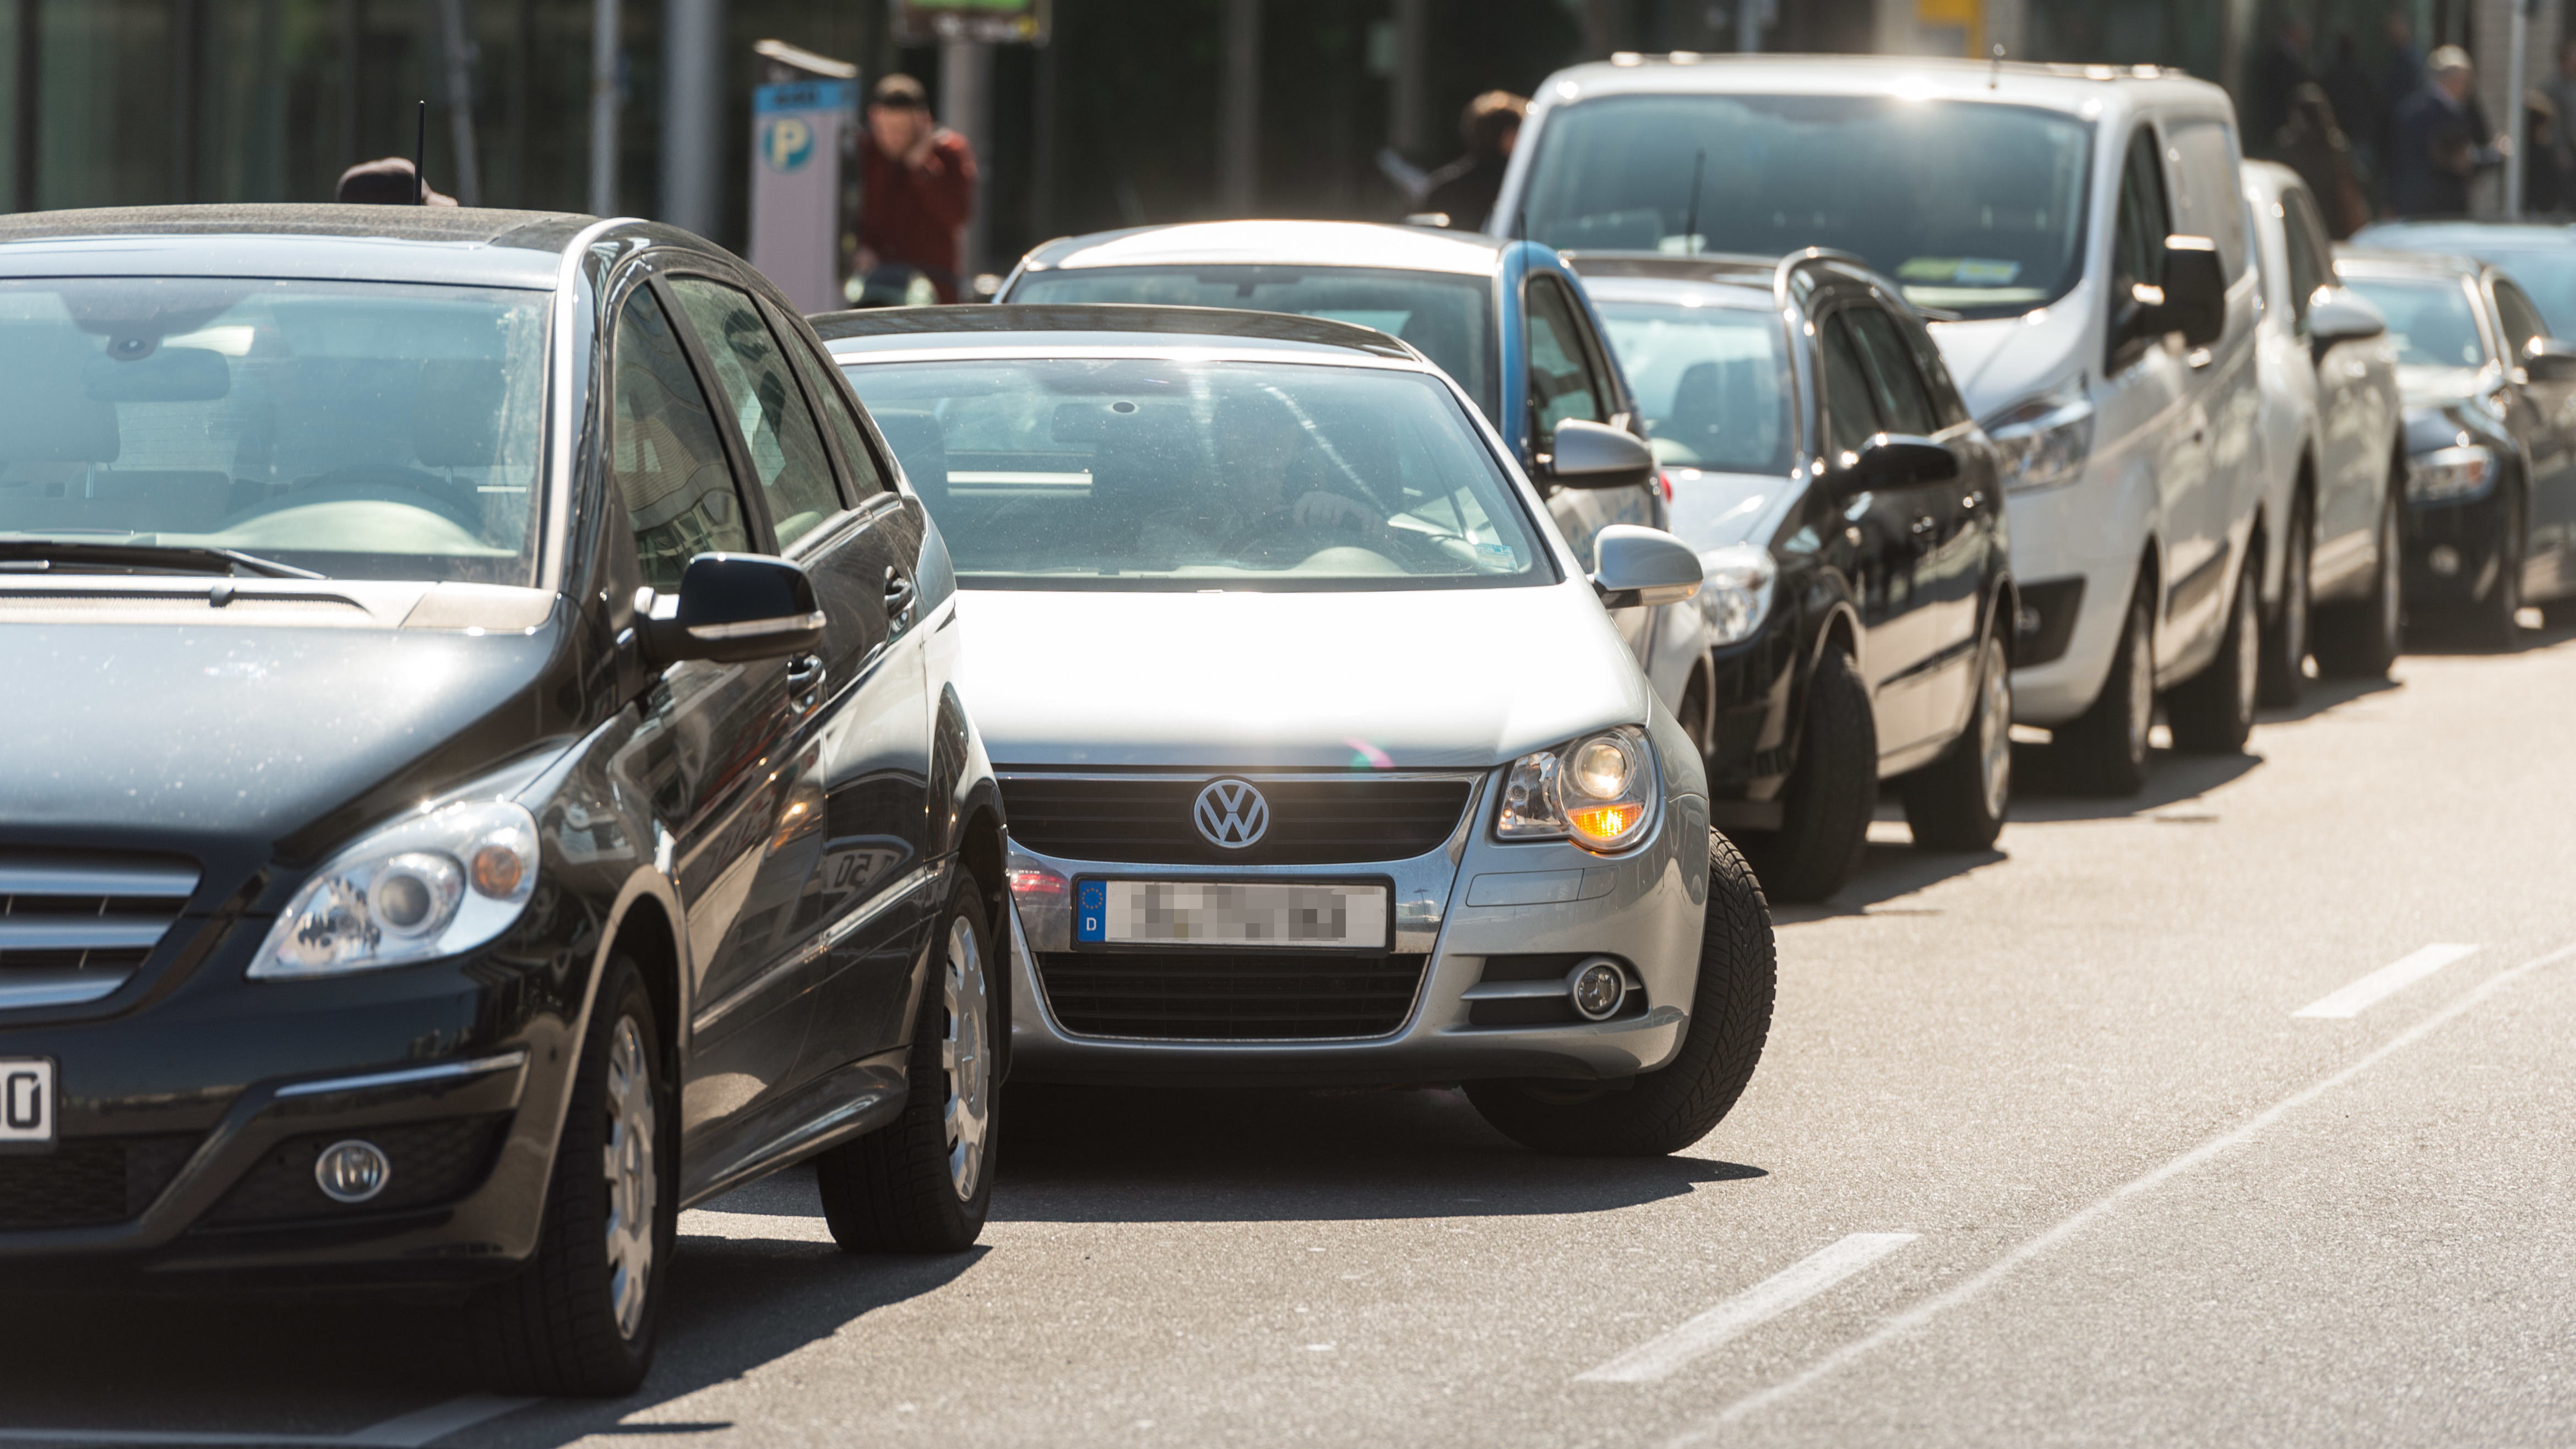 Germania: le funzioni di parcheggio assistito equipaggiano più le vetture mid-size di quelle premium